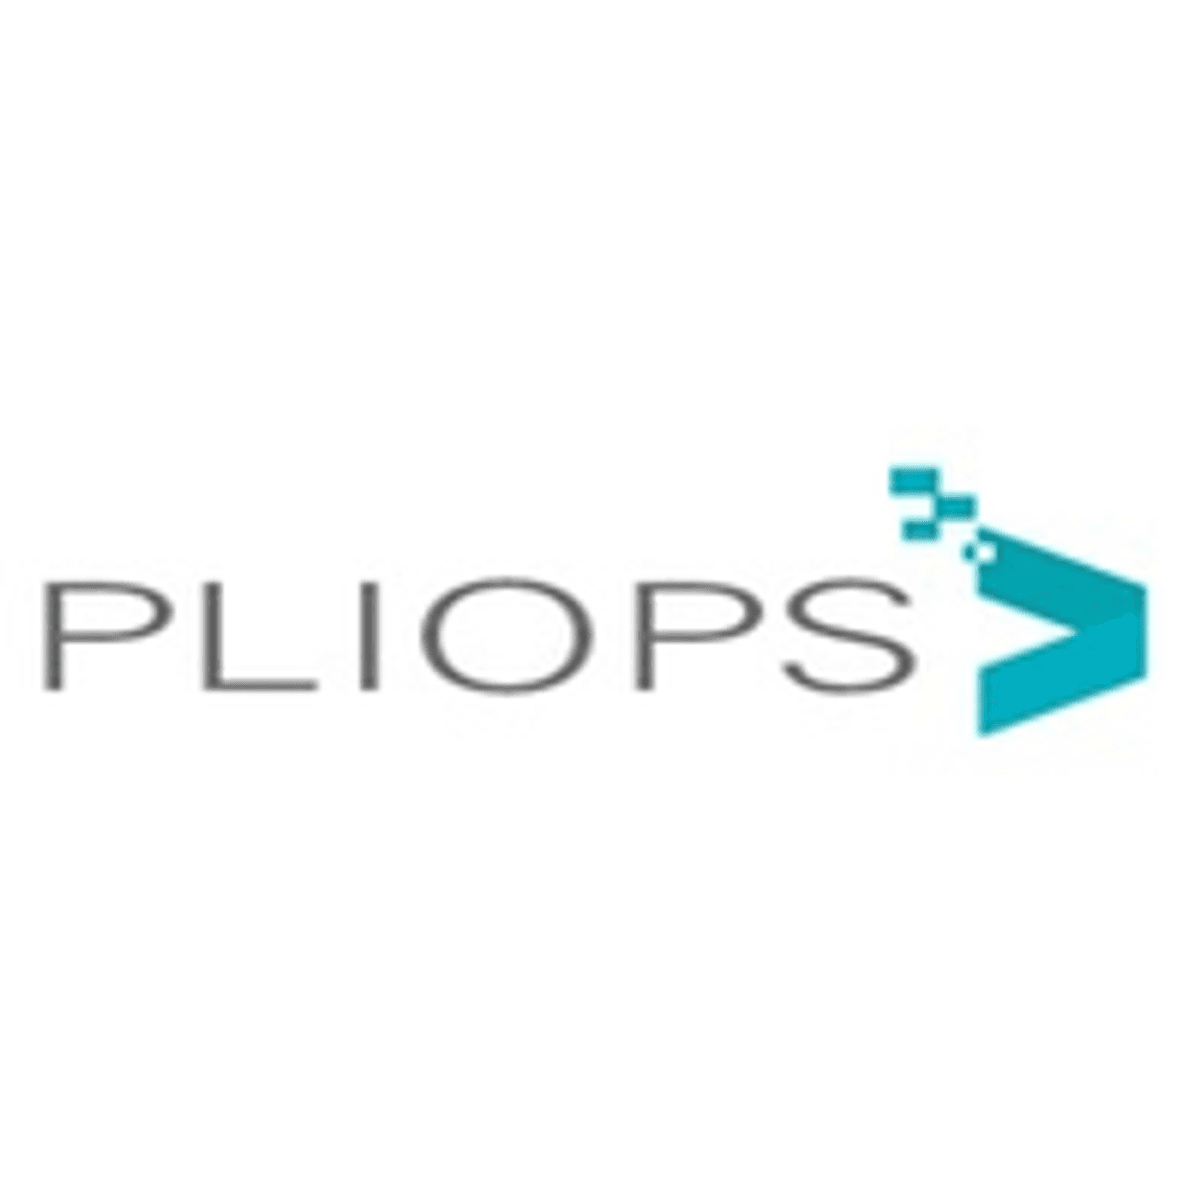 Pliops ontvangt kapitaal voor uitbouw cloud storage aanbod image